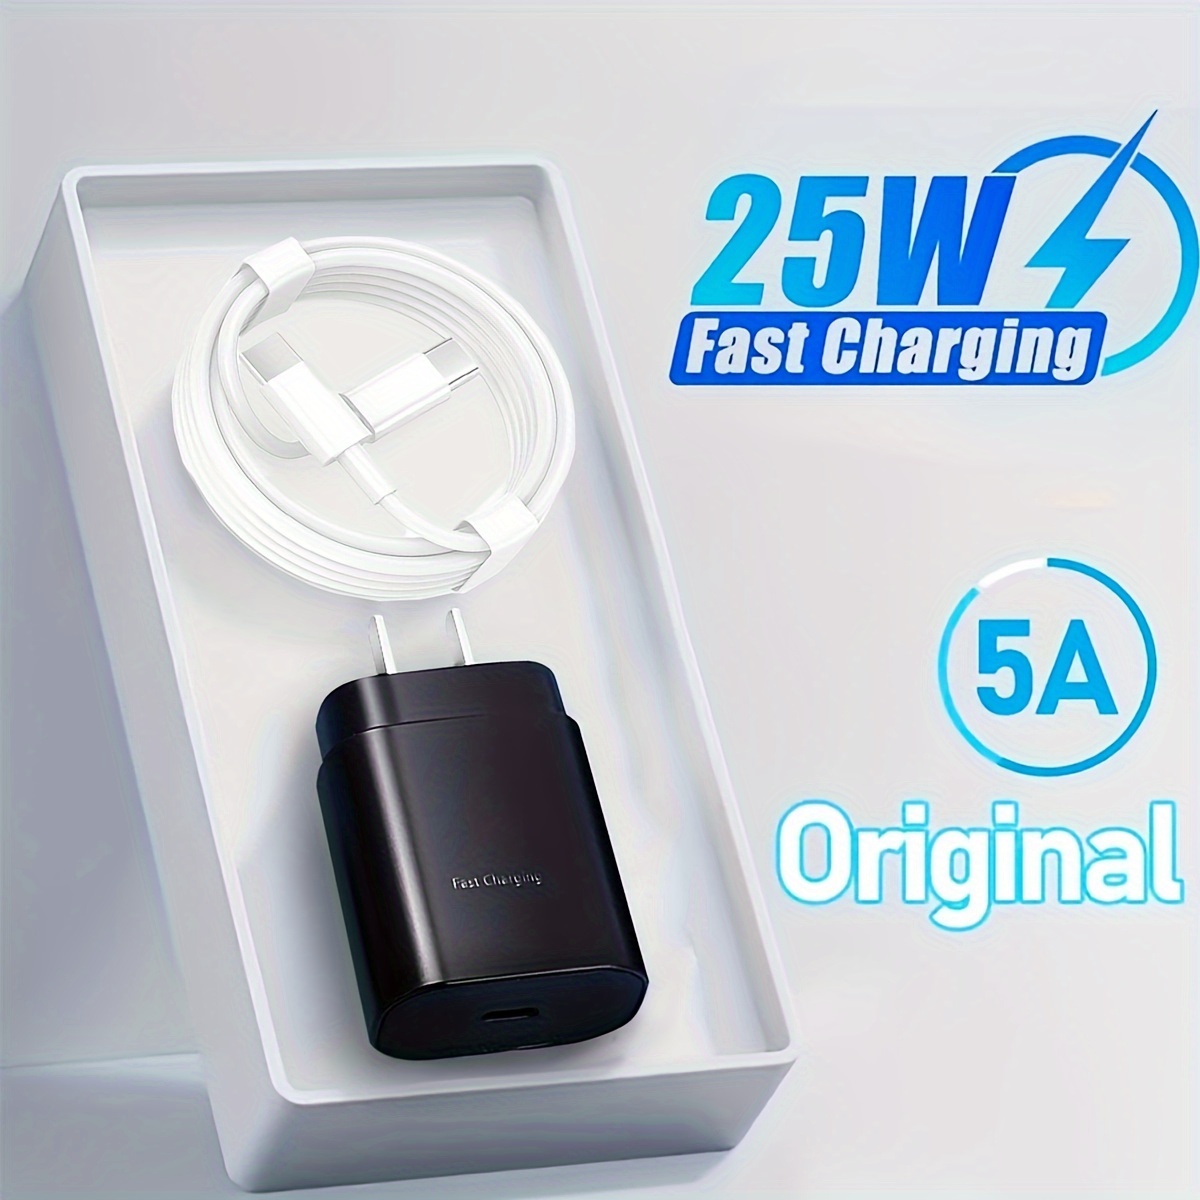 Cargador Samsung Original Adaptador De Carga 45W Usb C Type C Super Rapido  Super Fast Charging